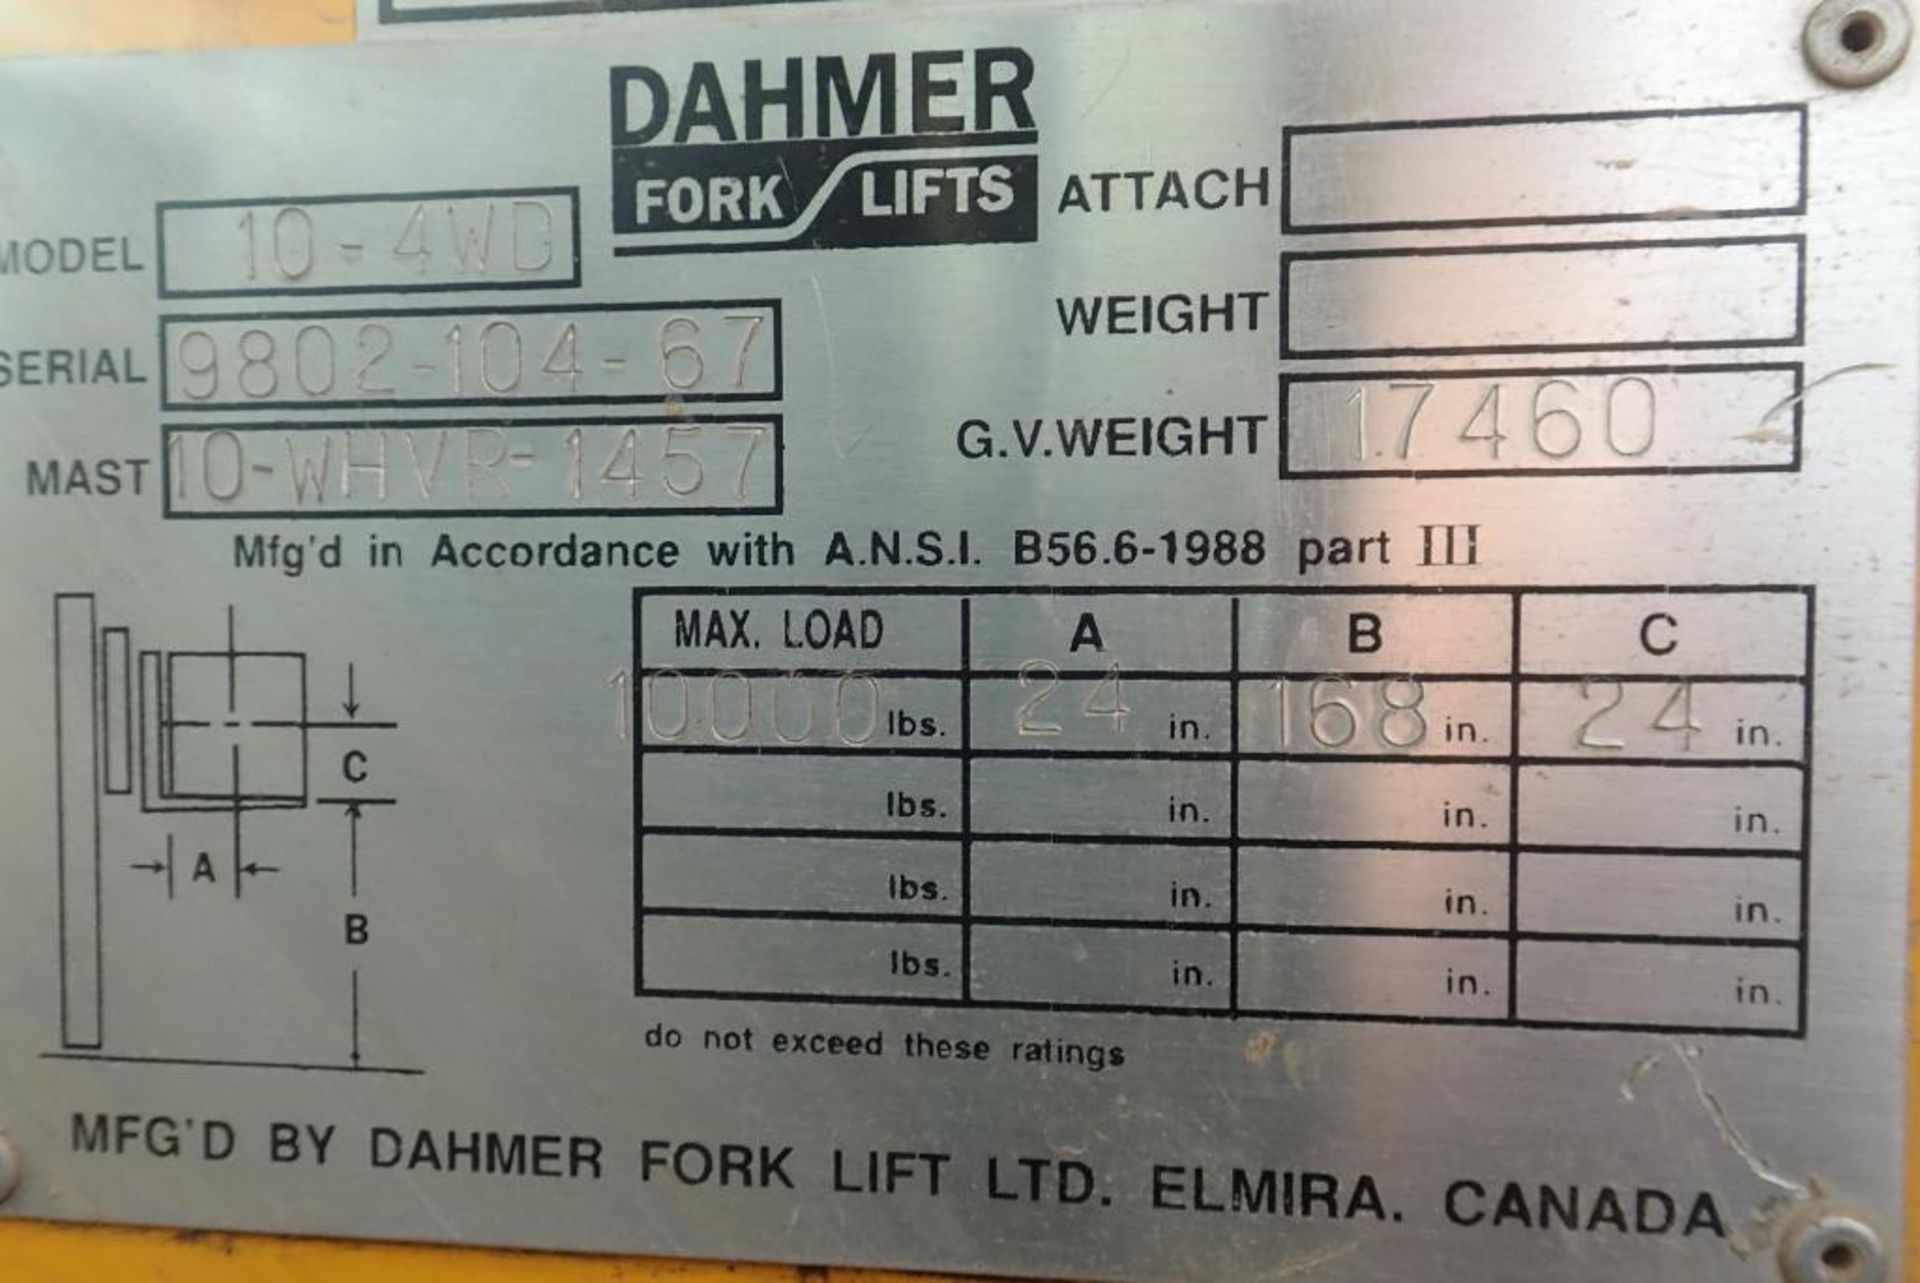 Dahmer 10-4WD 10,000lbs Capacity Diesel Forklift. SN 9802-104-67. - Image 8 of 9